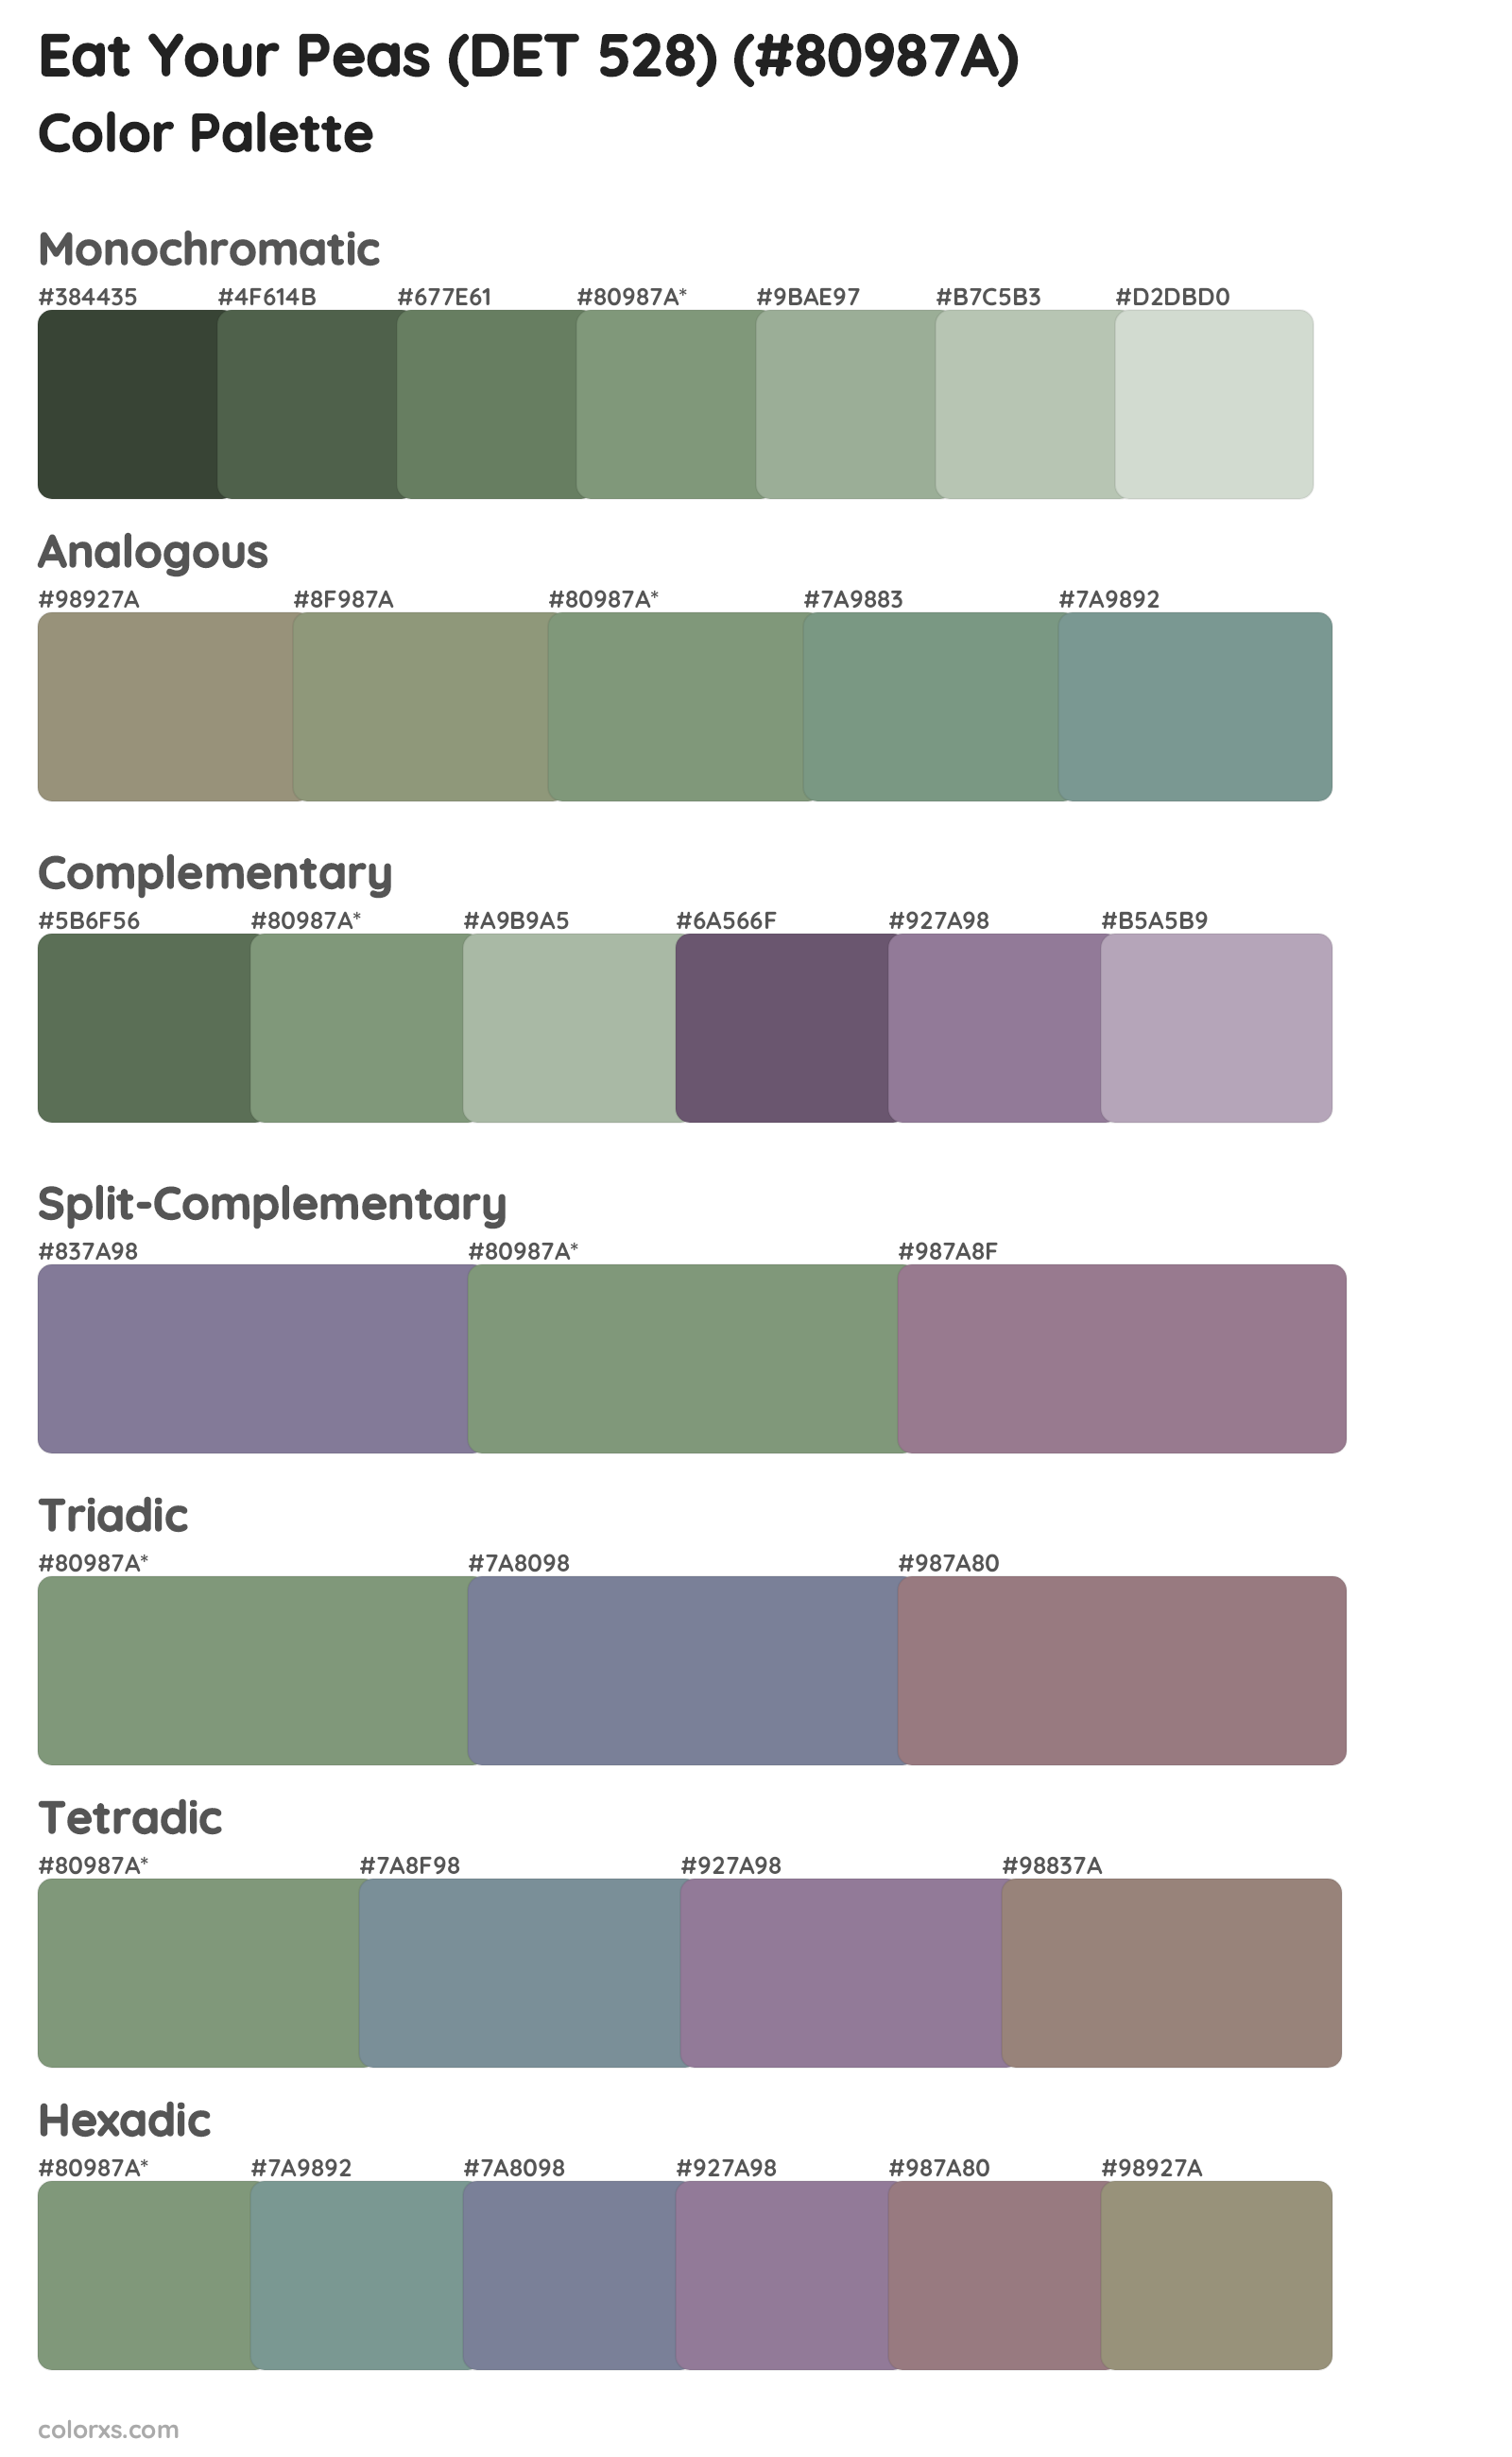 Eat Your Peas (DET 528) Color Scheme Palettes